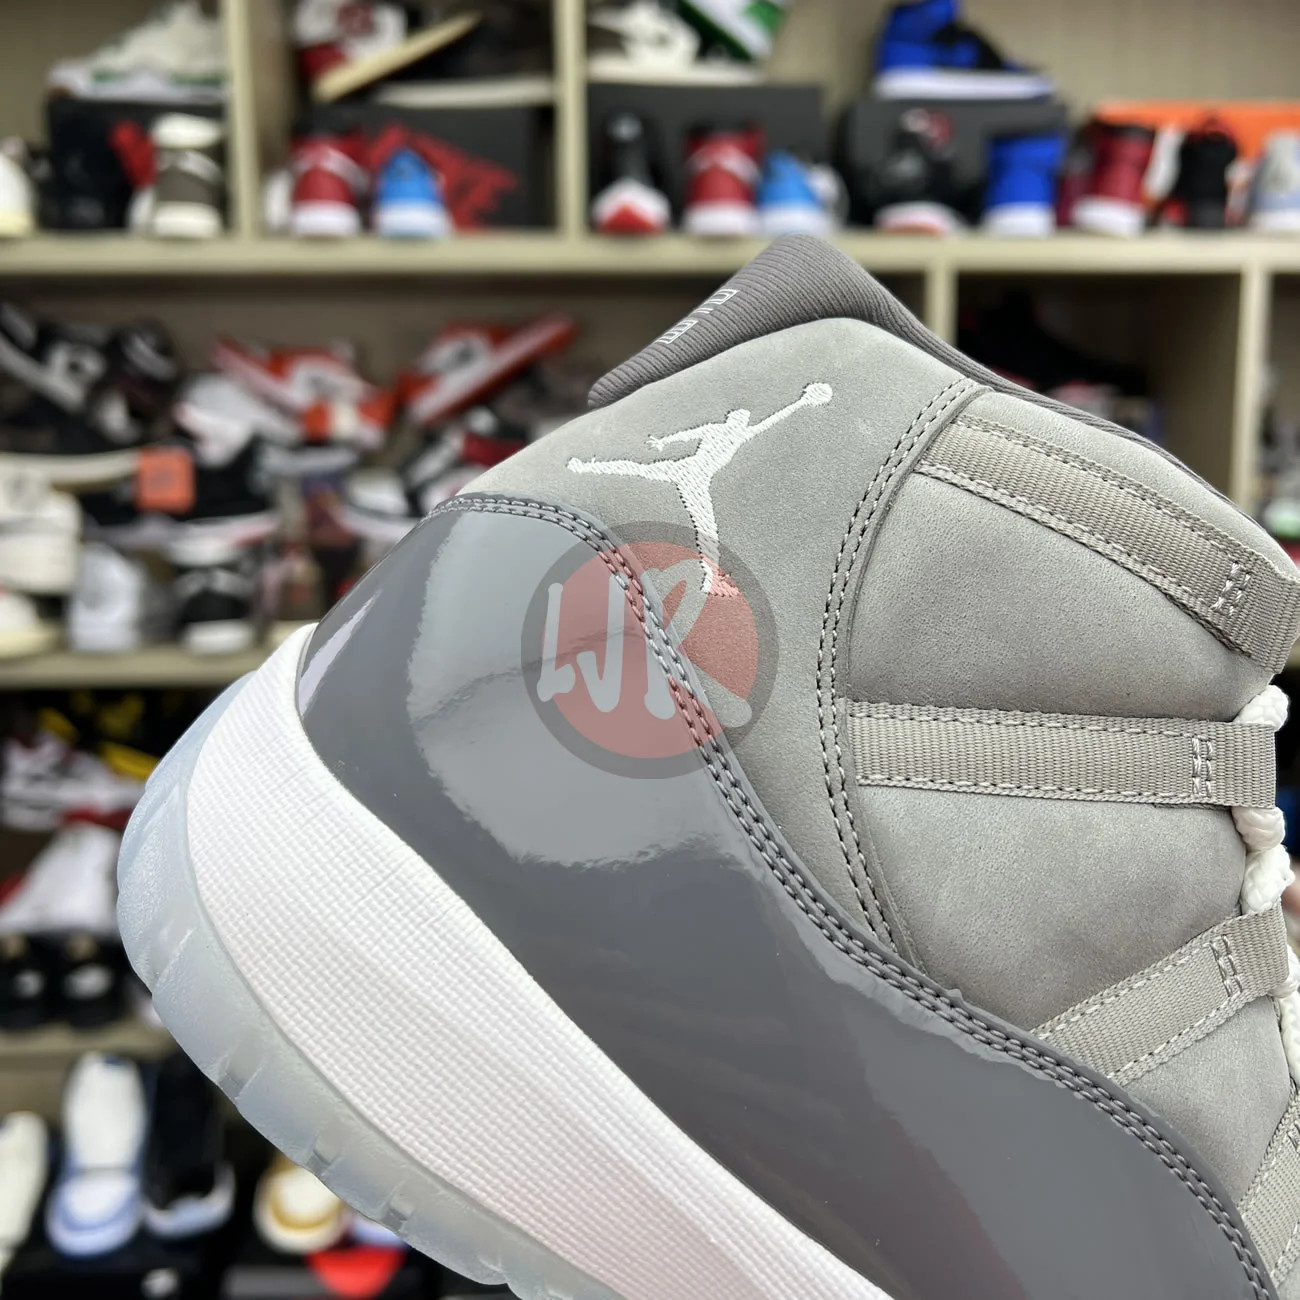 Air Jordan 11 Retro Cool Grey 2021 Ct8012 005 Ljr Sneakers (4) - bc-ljr.com